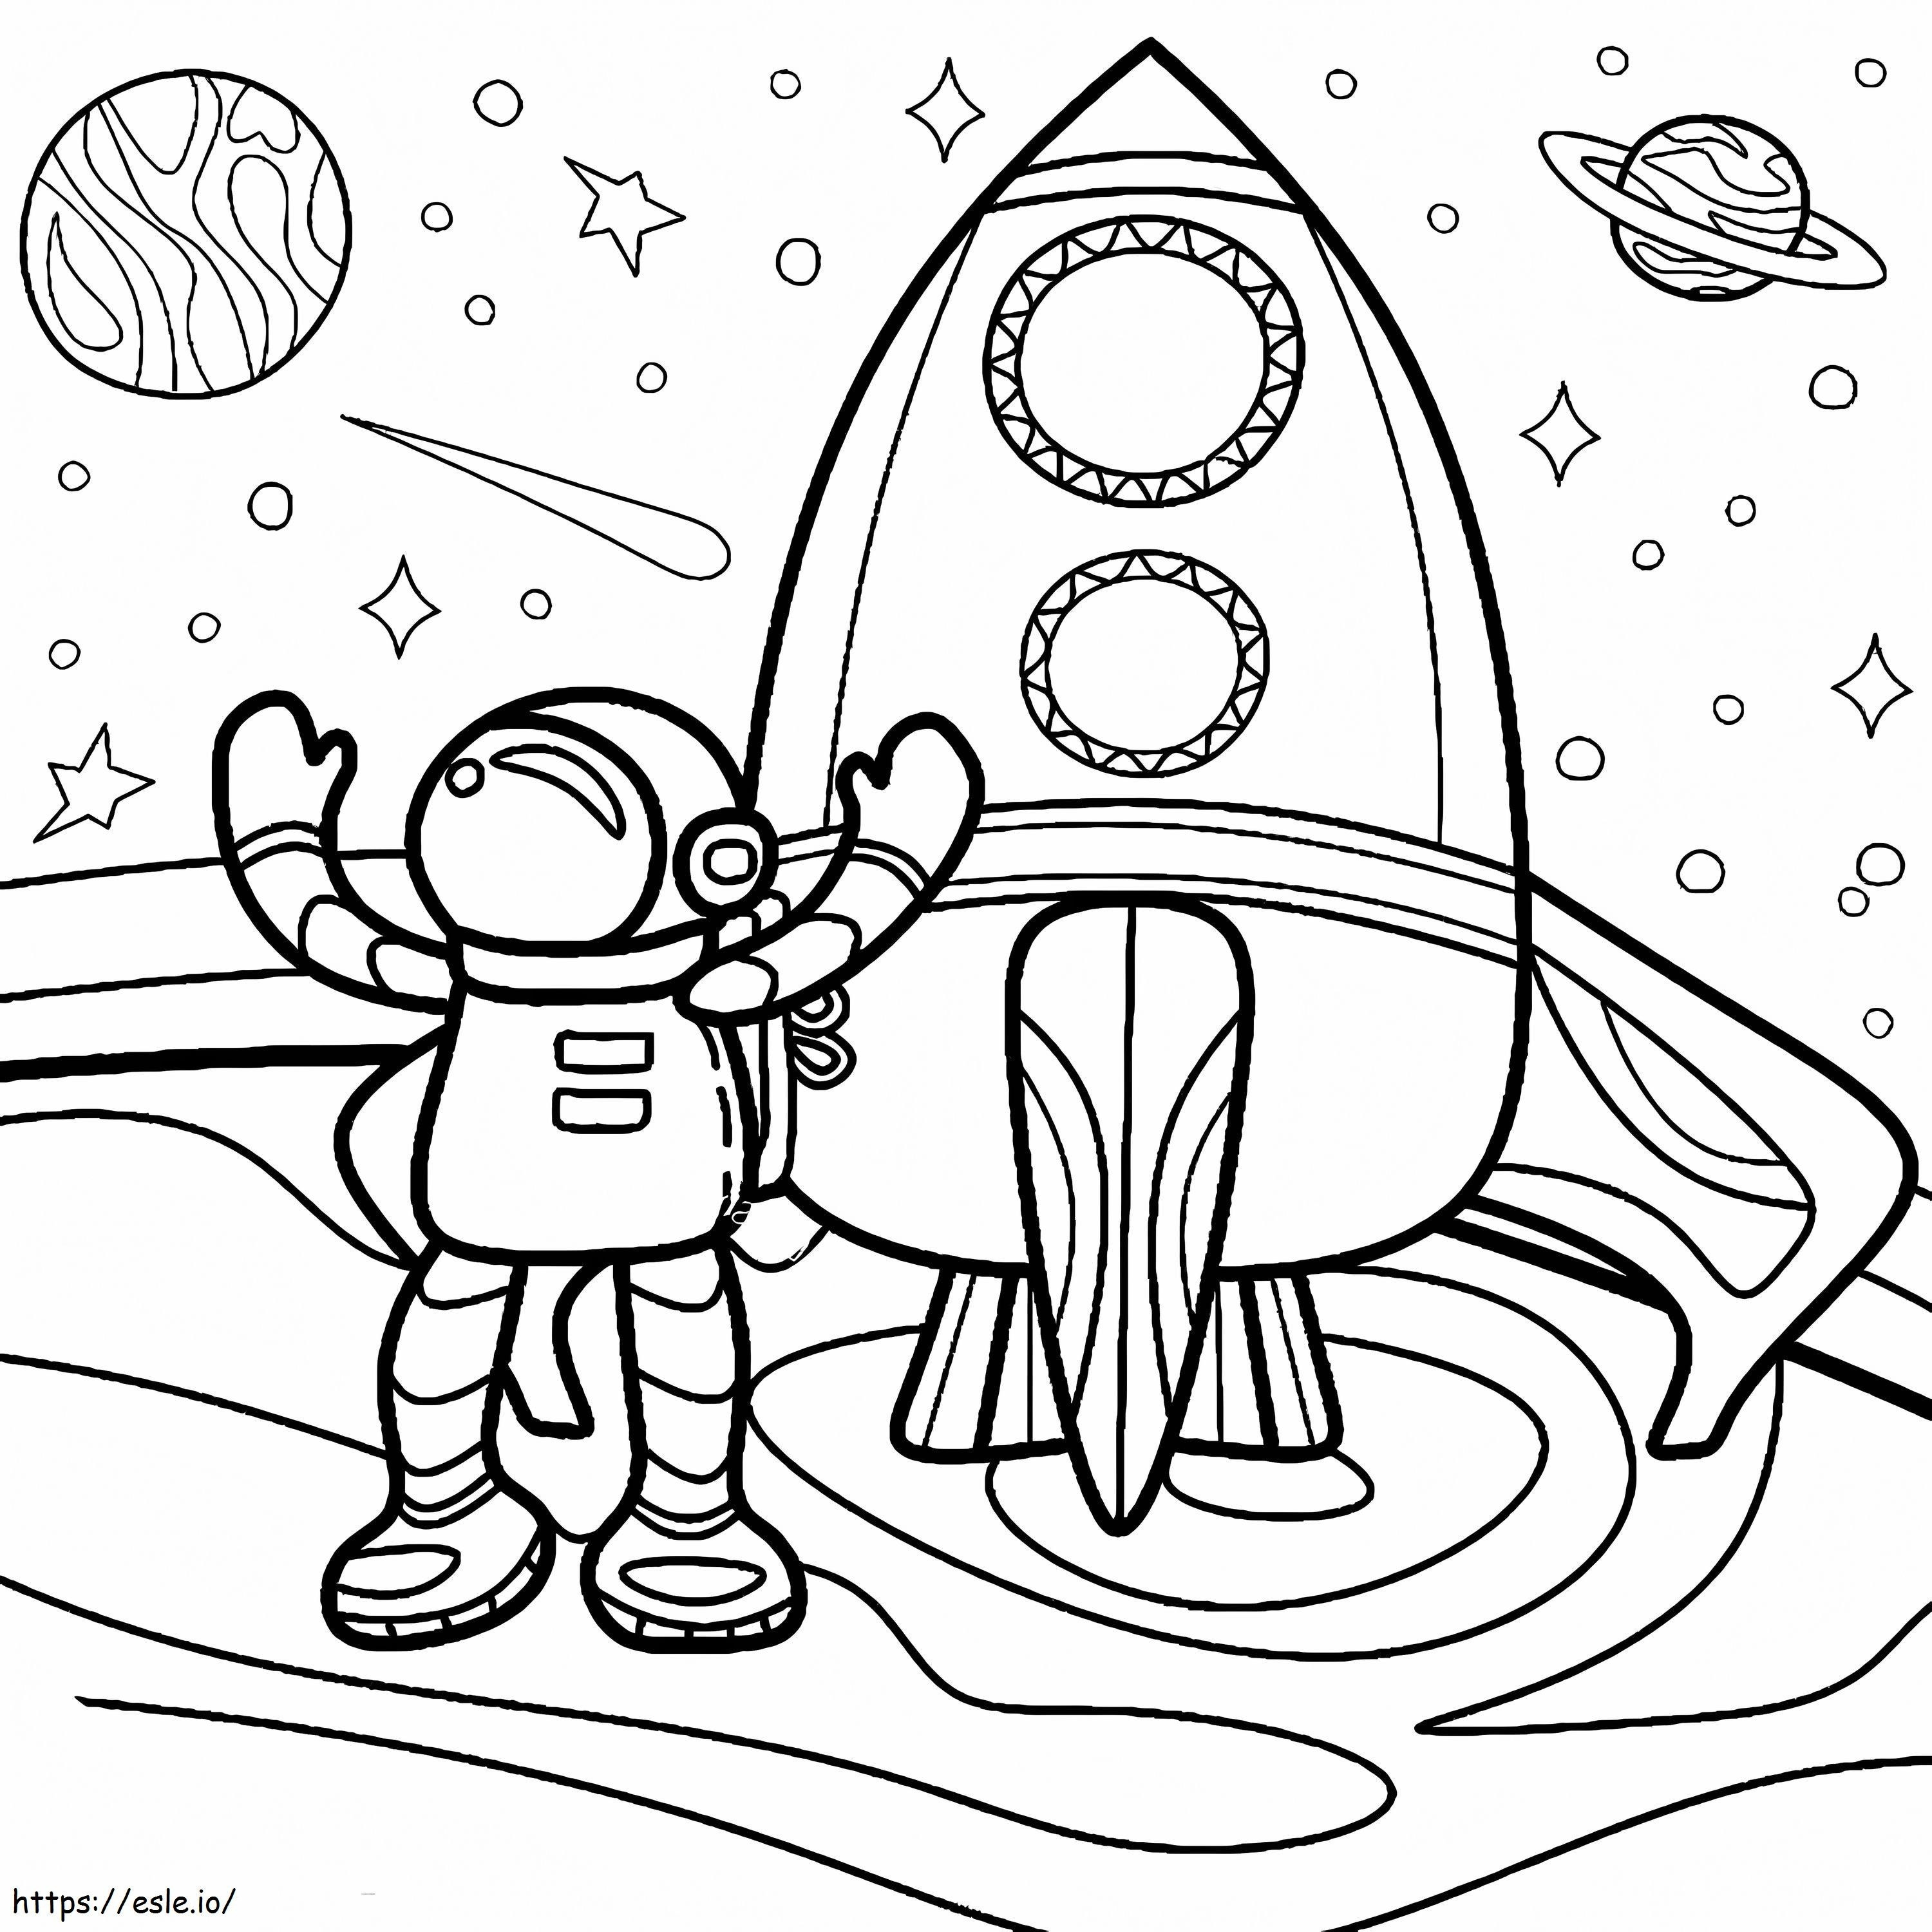 Astronaut de desene animate cu rachetă de colorat